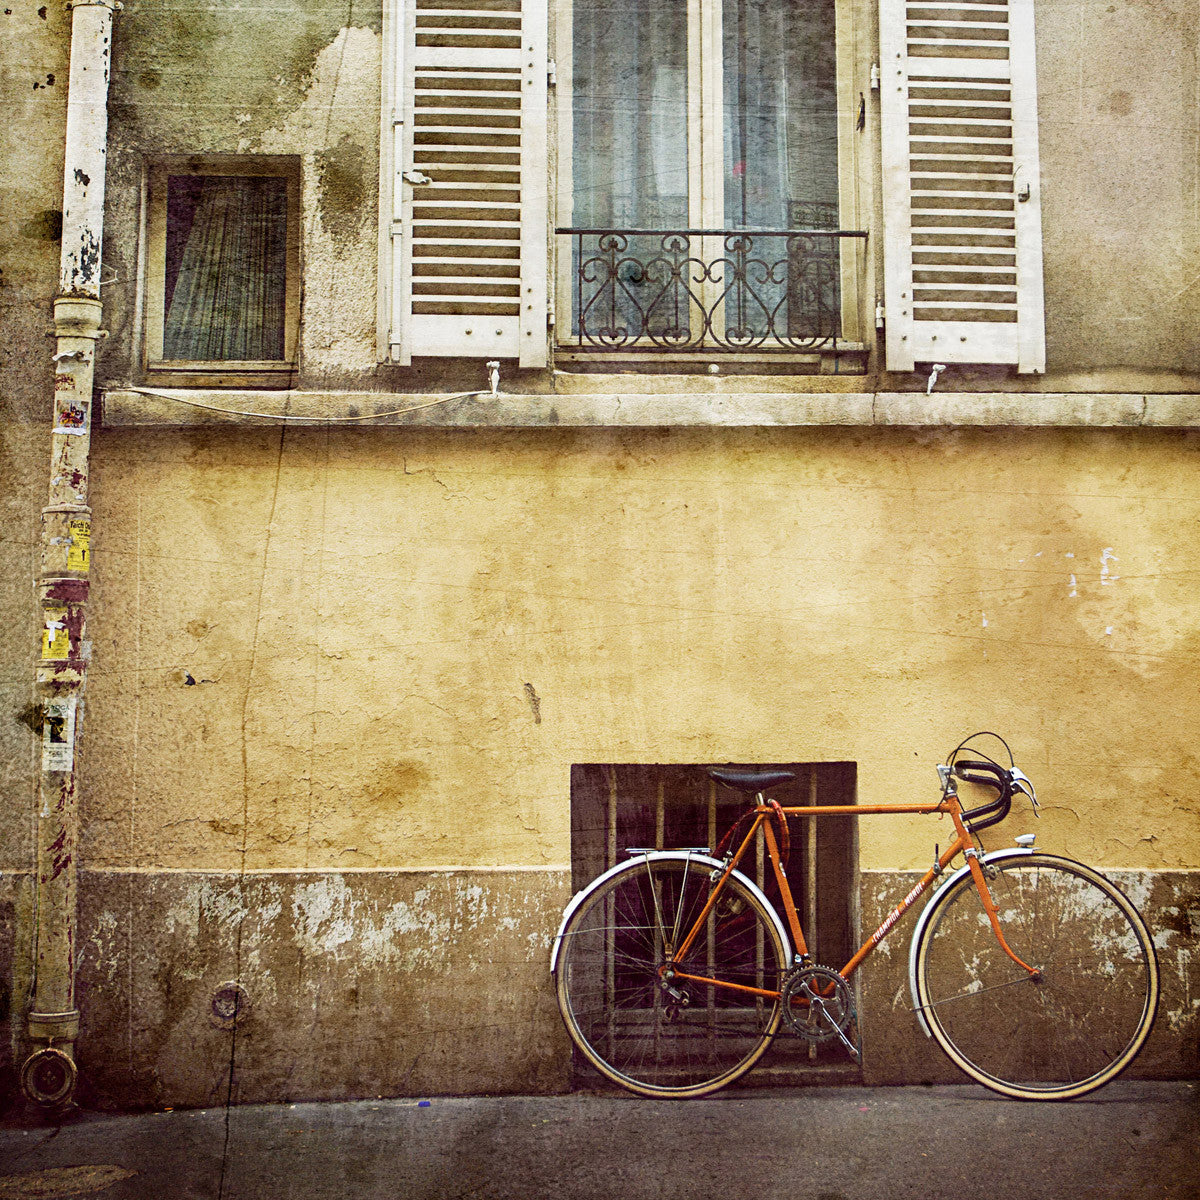 Bicicleta antigua en<br> Distrito parisino de Popincourt<br> Impresión cromogénica de bellas artes de archivo